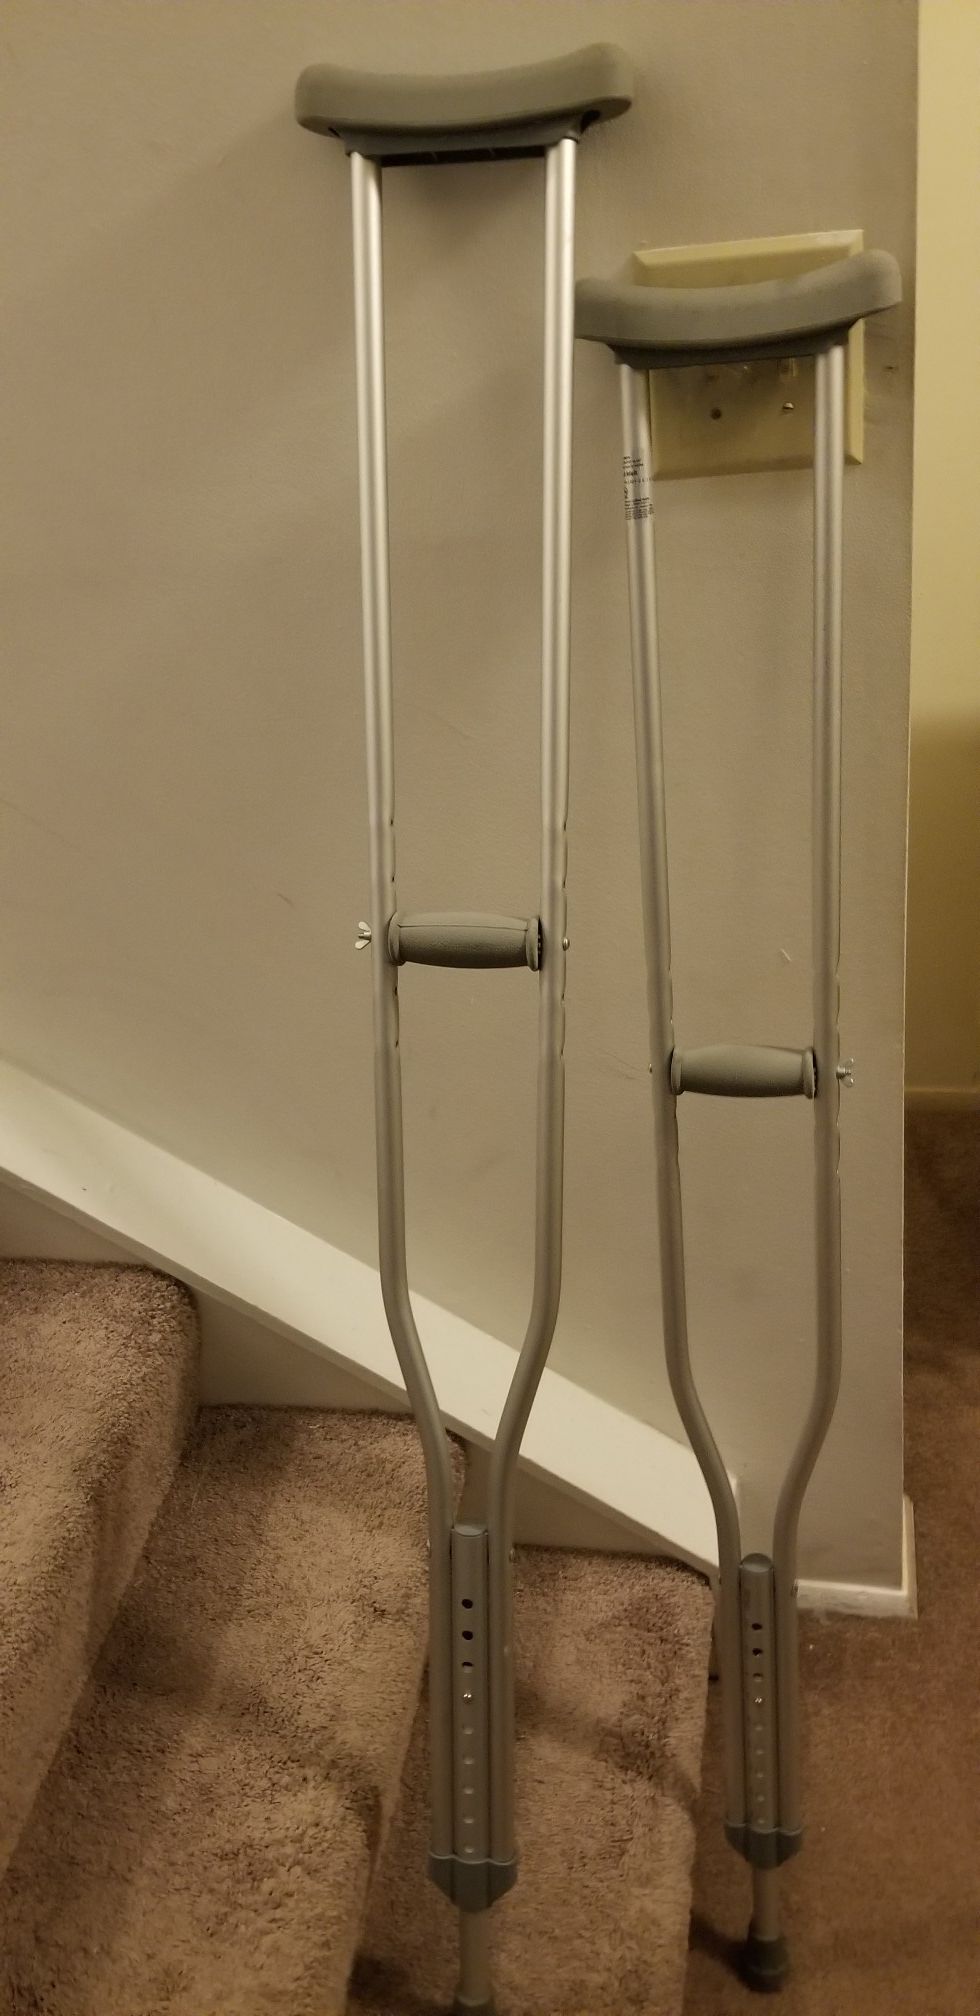 Crutches